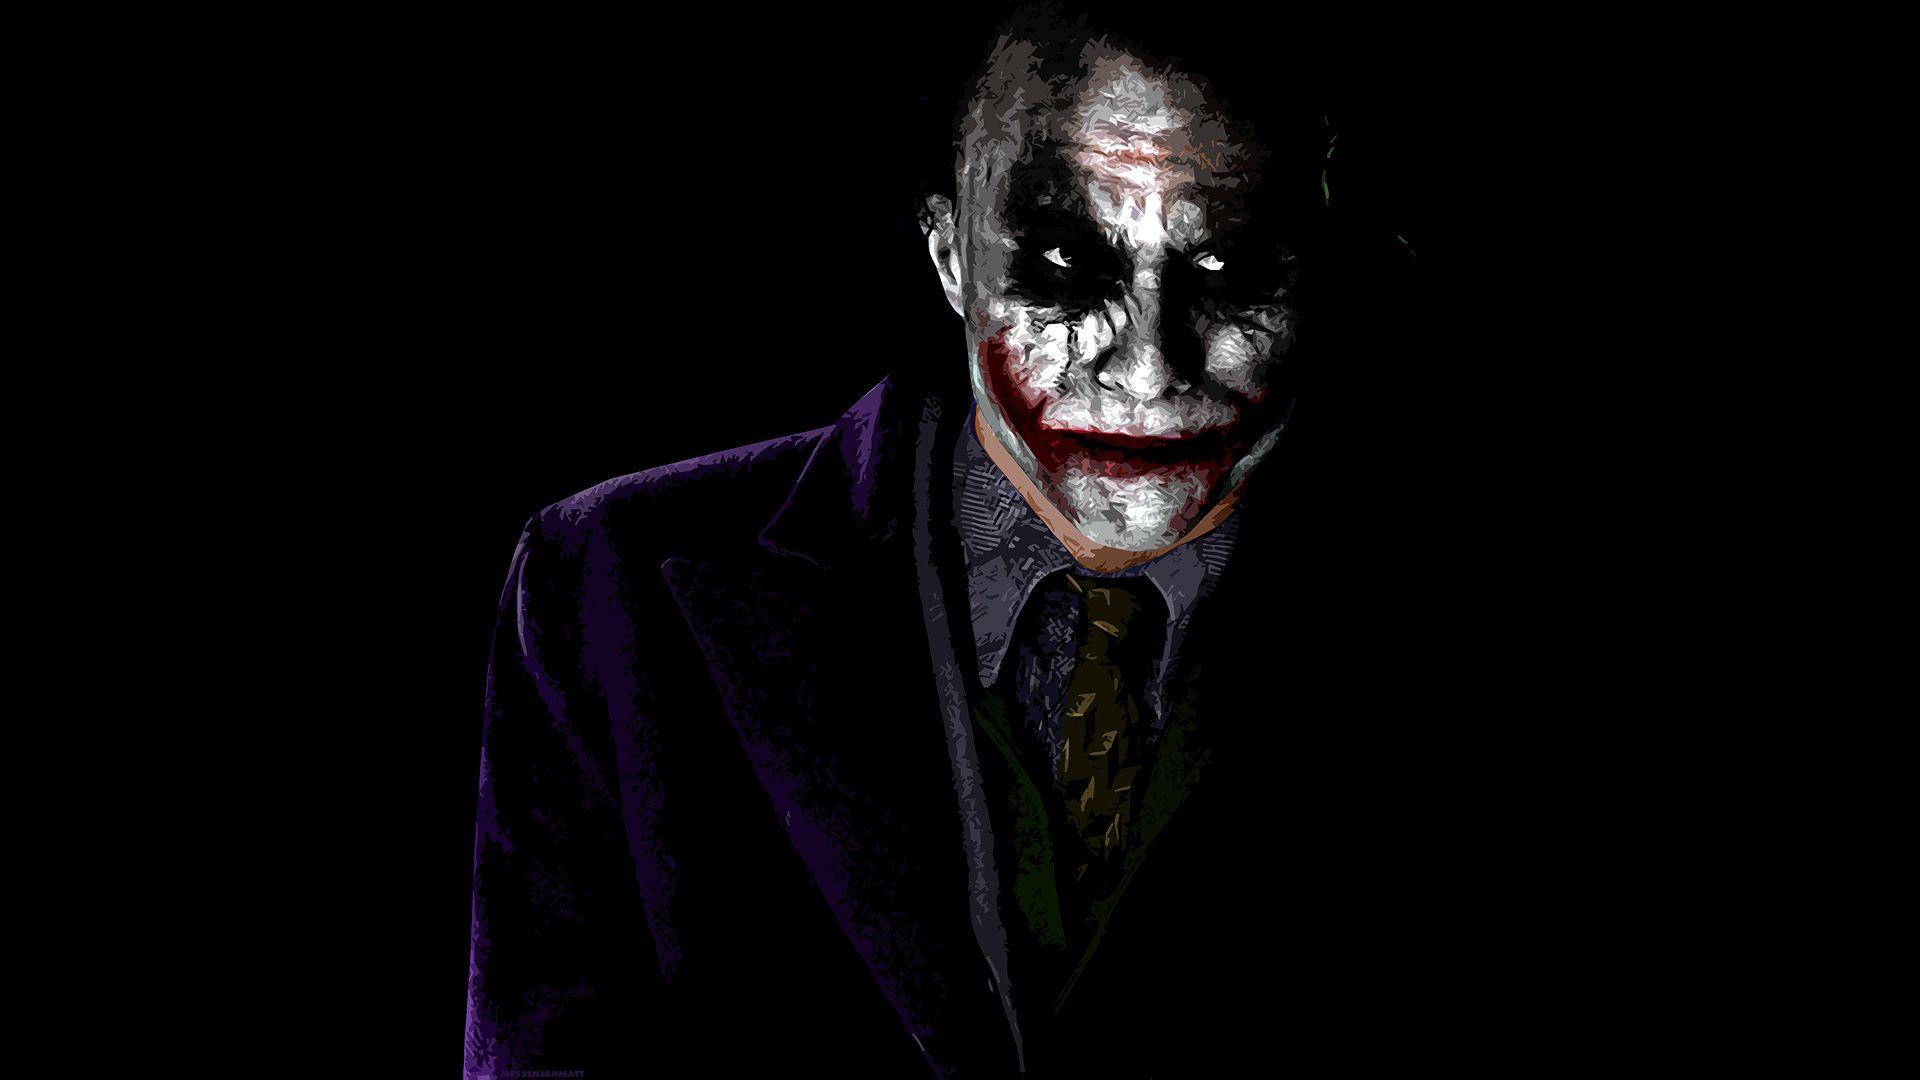 Badass Joker Wallpapers Top Những Hình Ảnh Đẹp